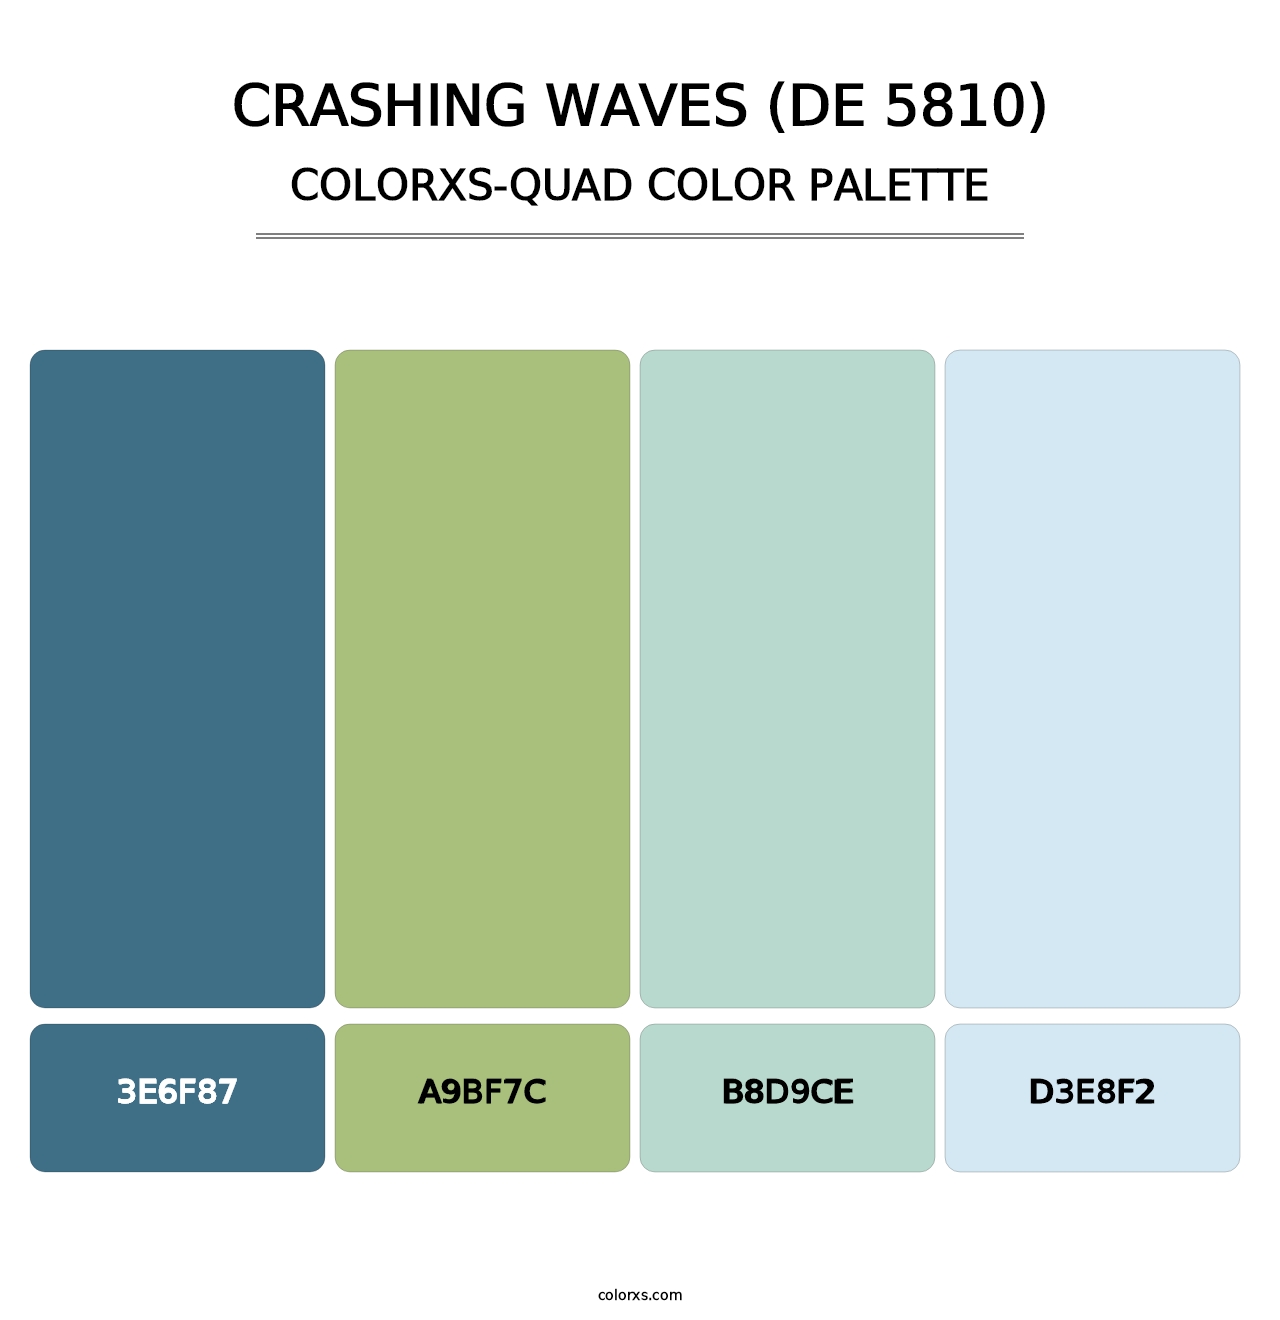 Crashing Waves (DE 5810) - Colorxs Quad Palette